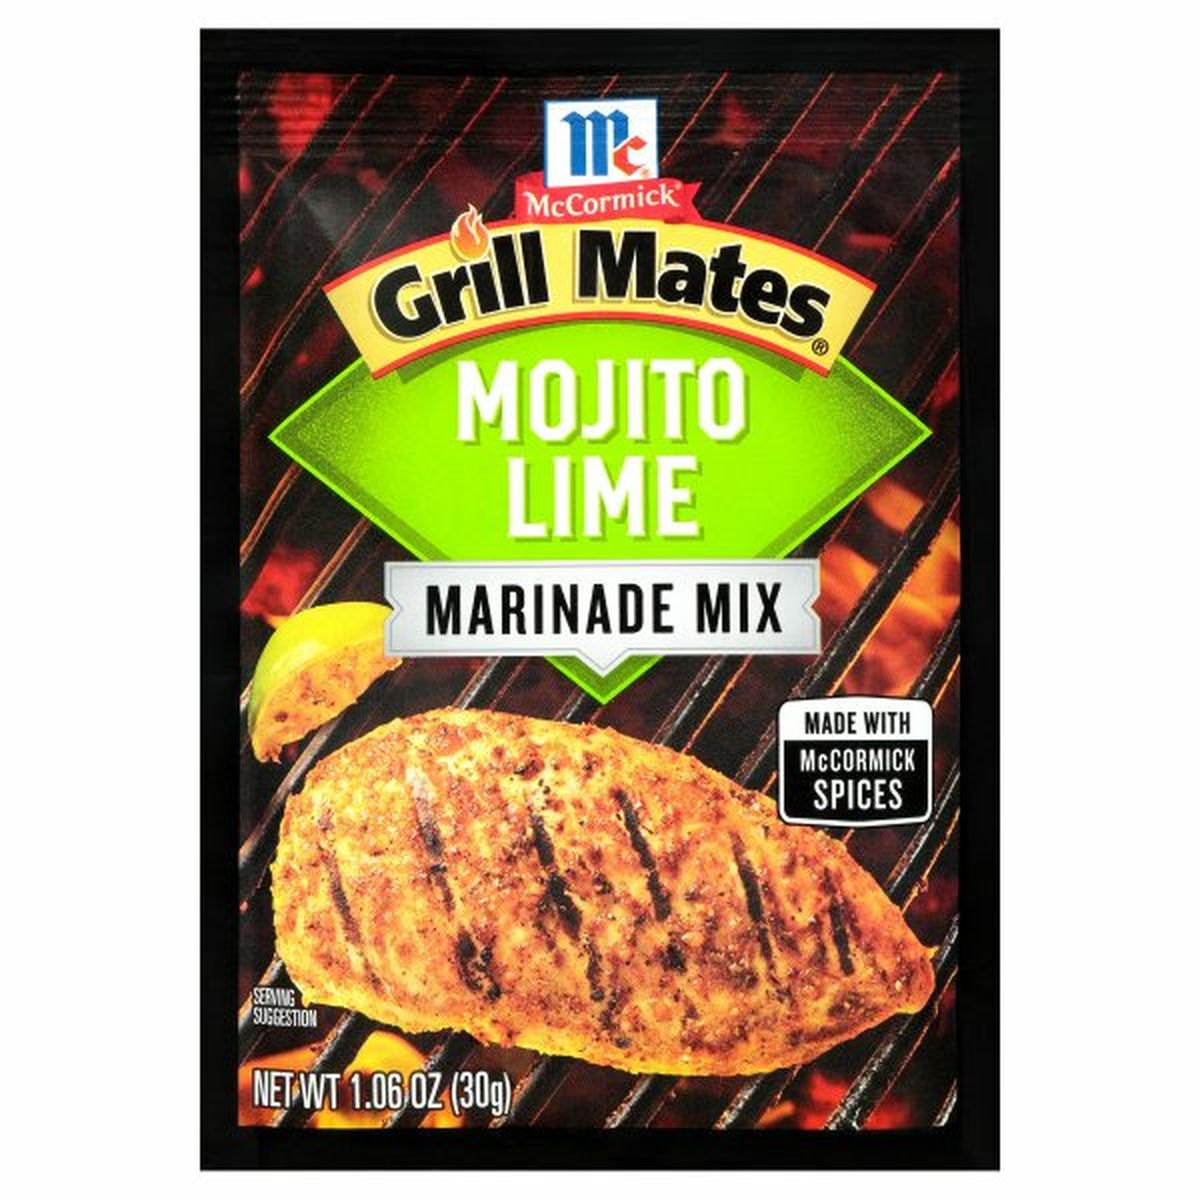 Calories in McCormicks Grill Matess Grill Mates Mojito Lime Marinade Mix